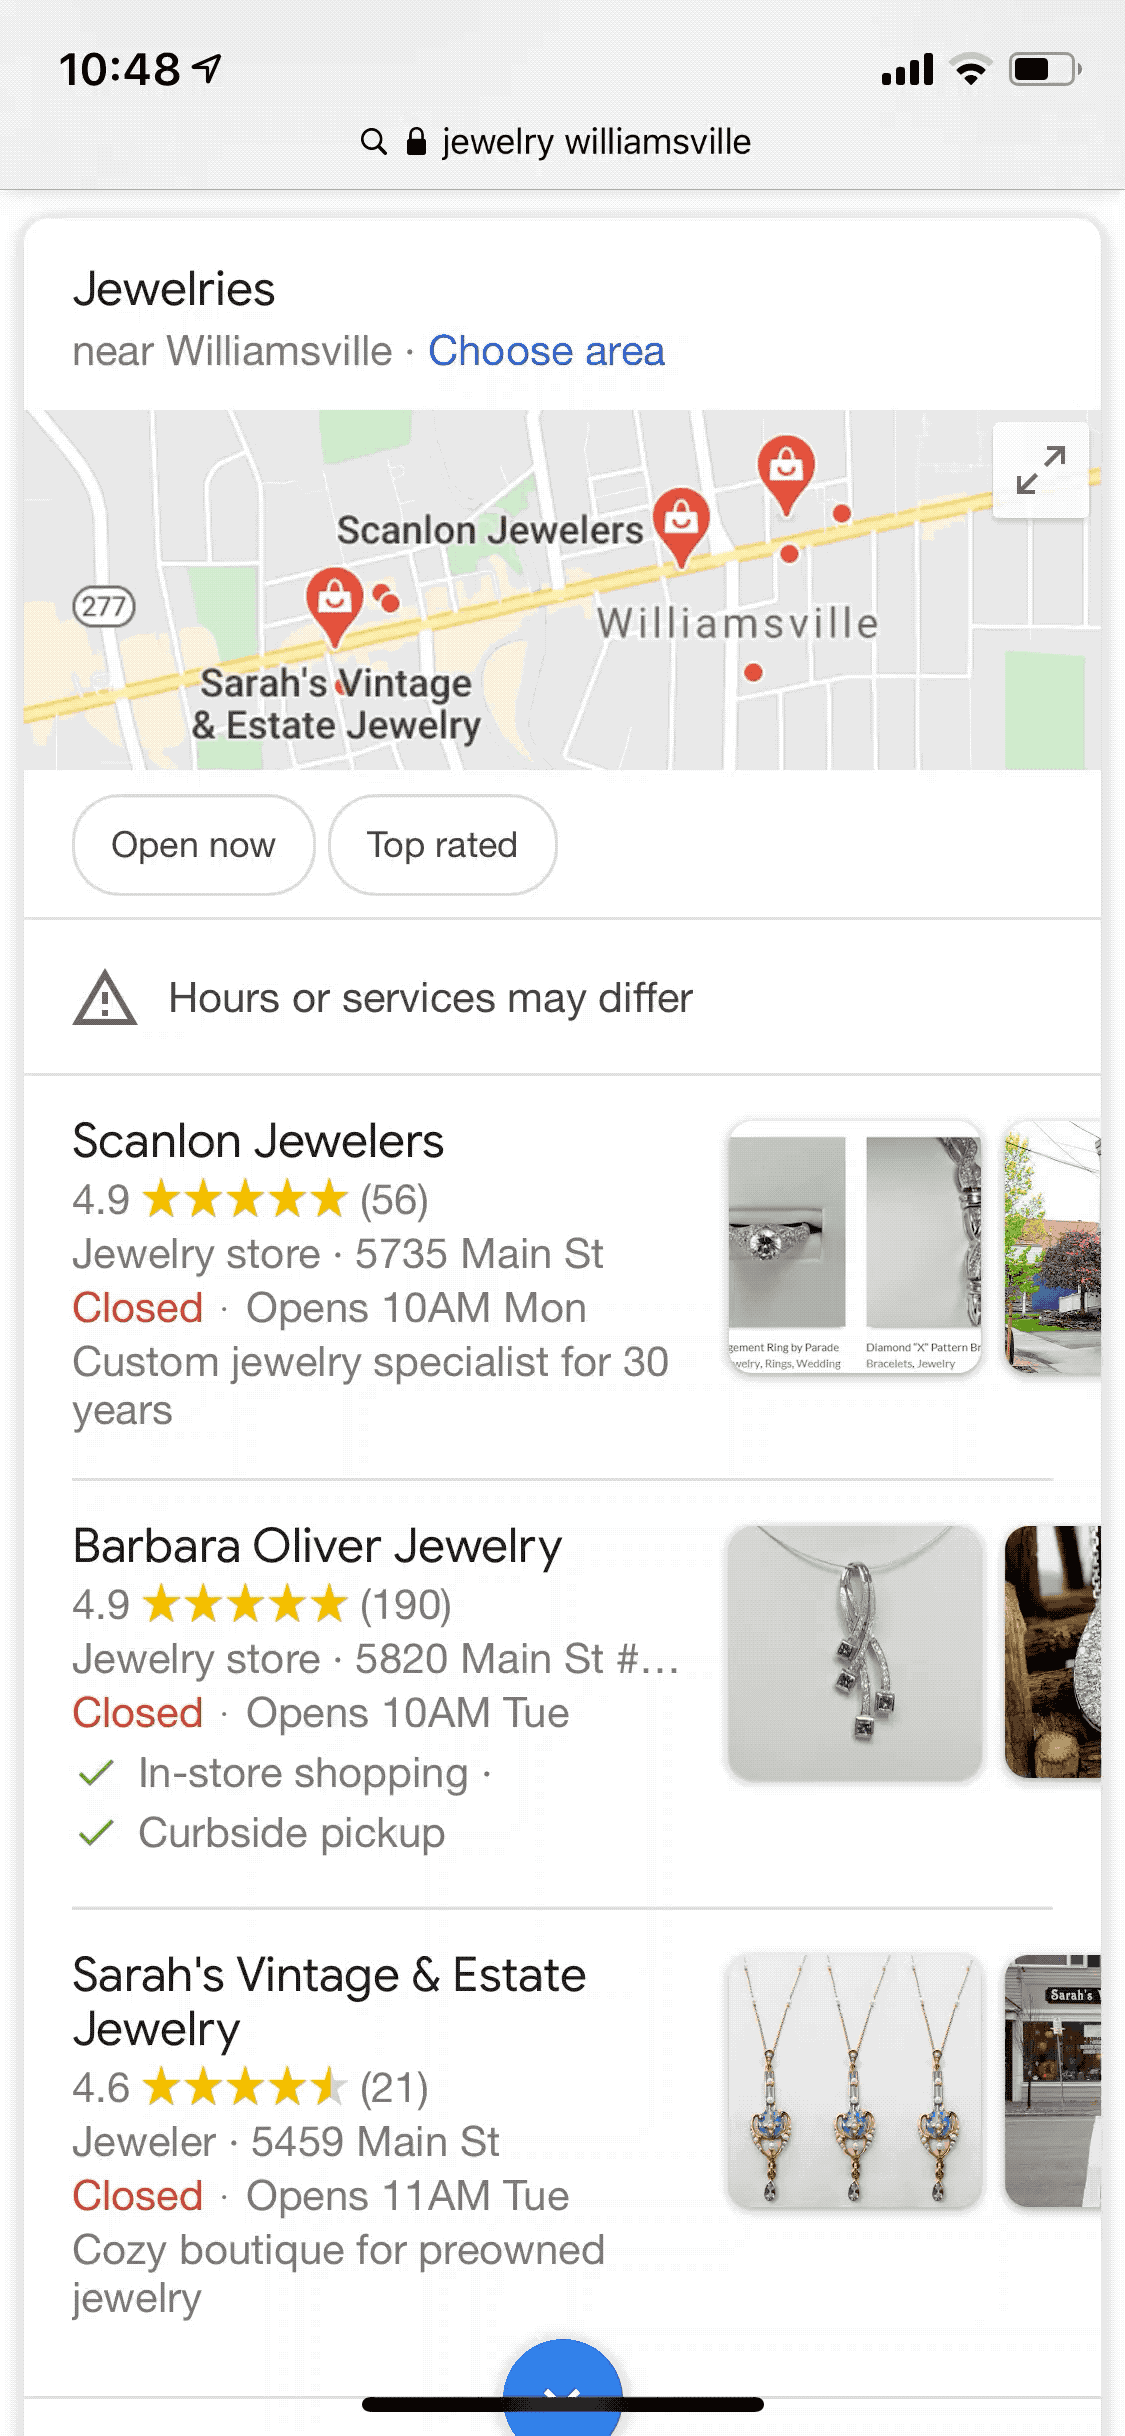 visualización de un Local pack en Google con la nueva integración de carrusel de 5 imágenes sobre los productos del establecimiento 